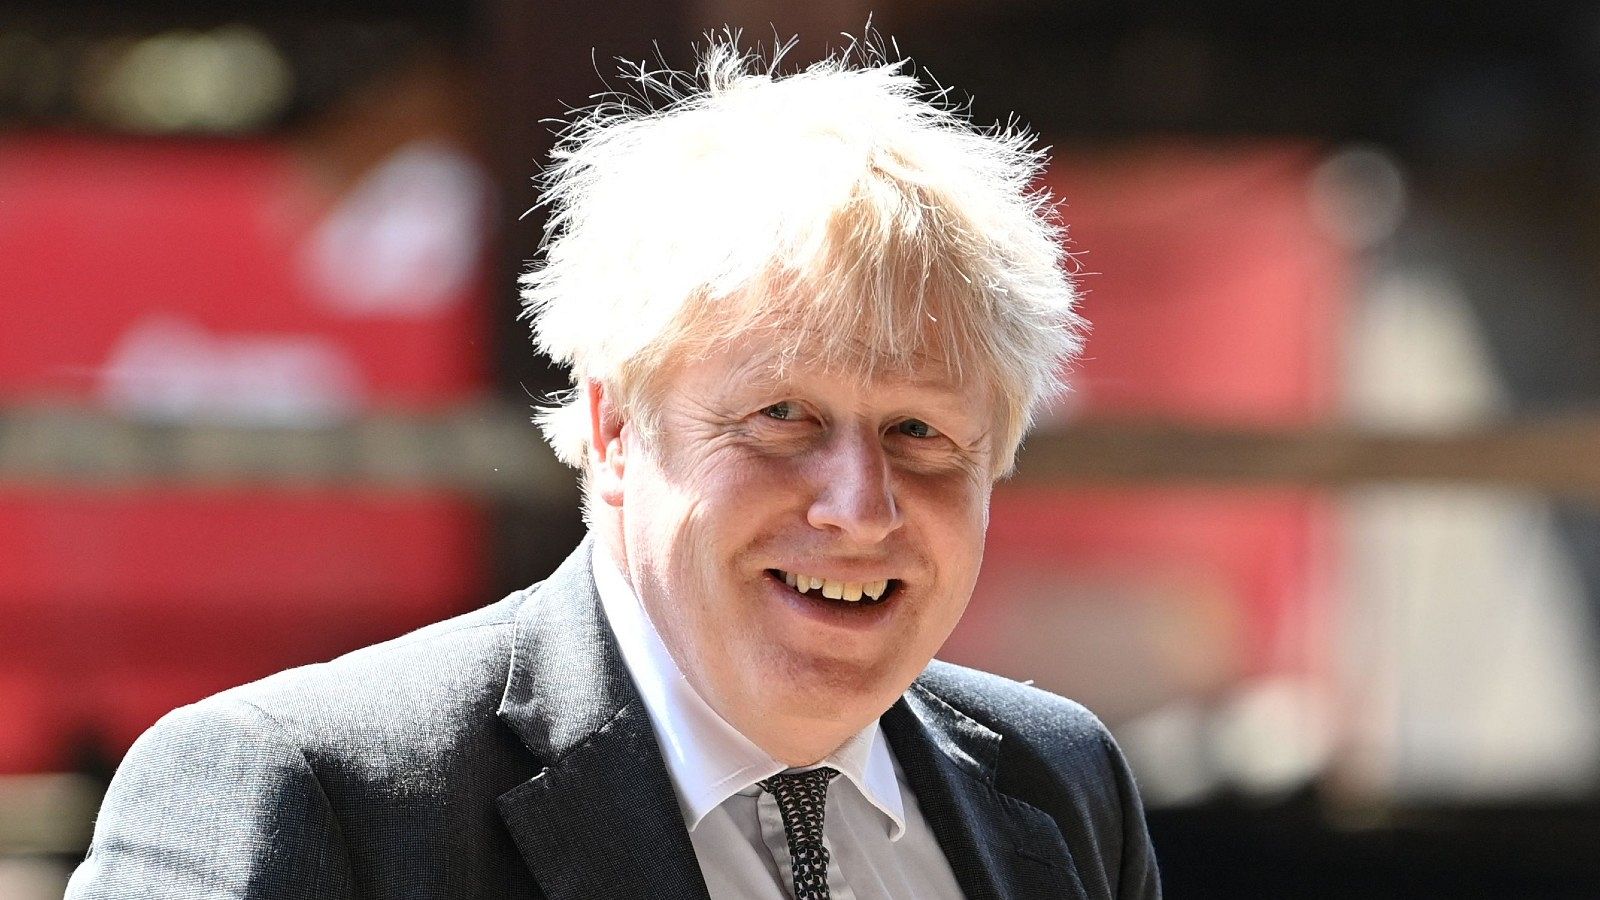 Las polémicas cercan a Boris Johnson, acusado de comentarios insensibles sobre la pandemia